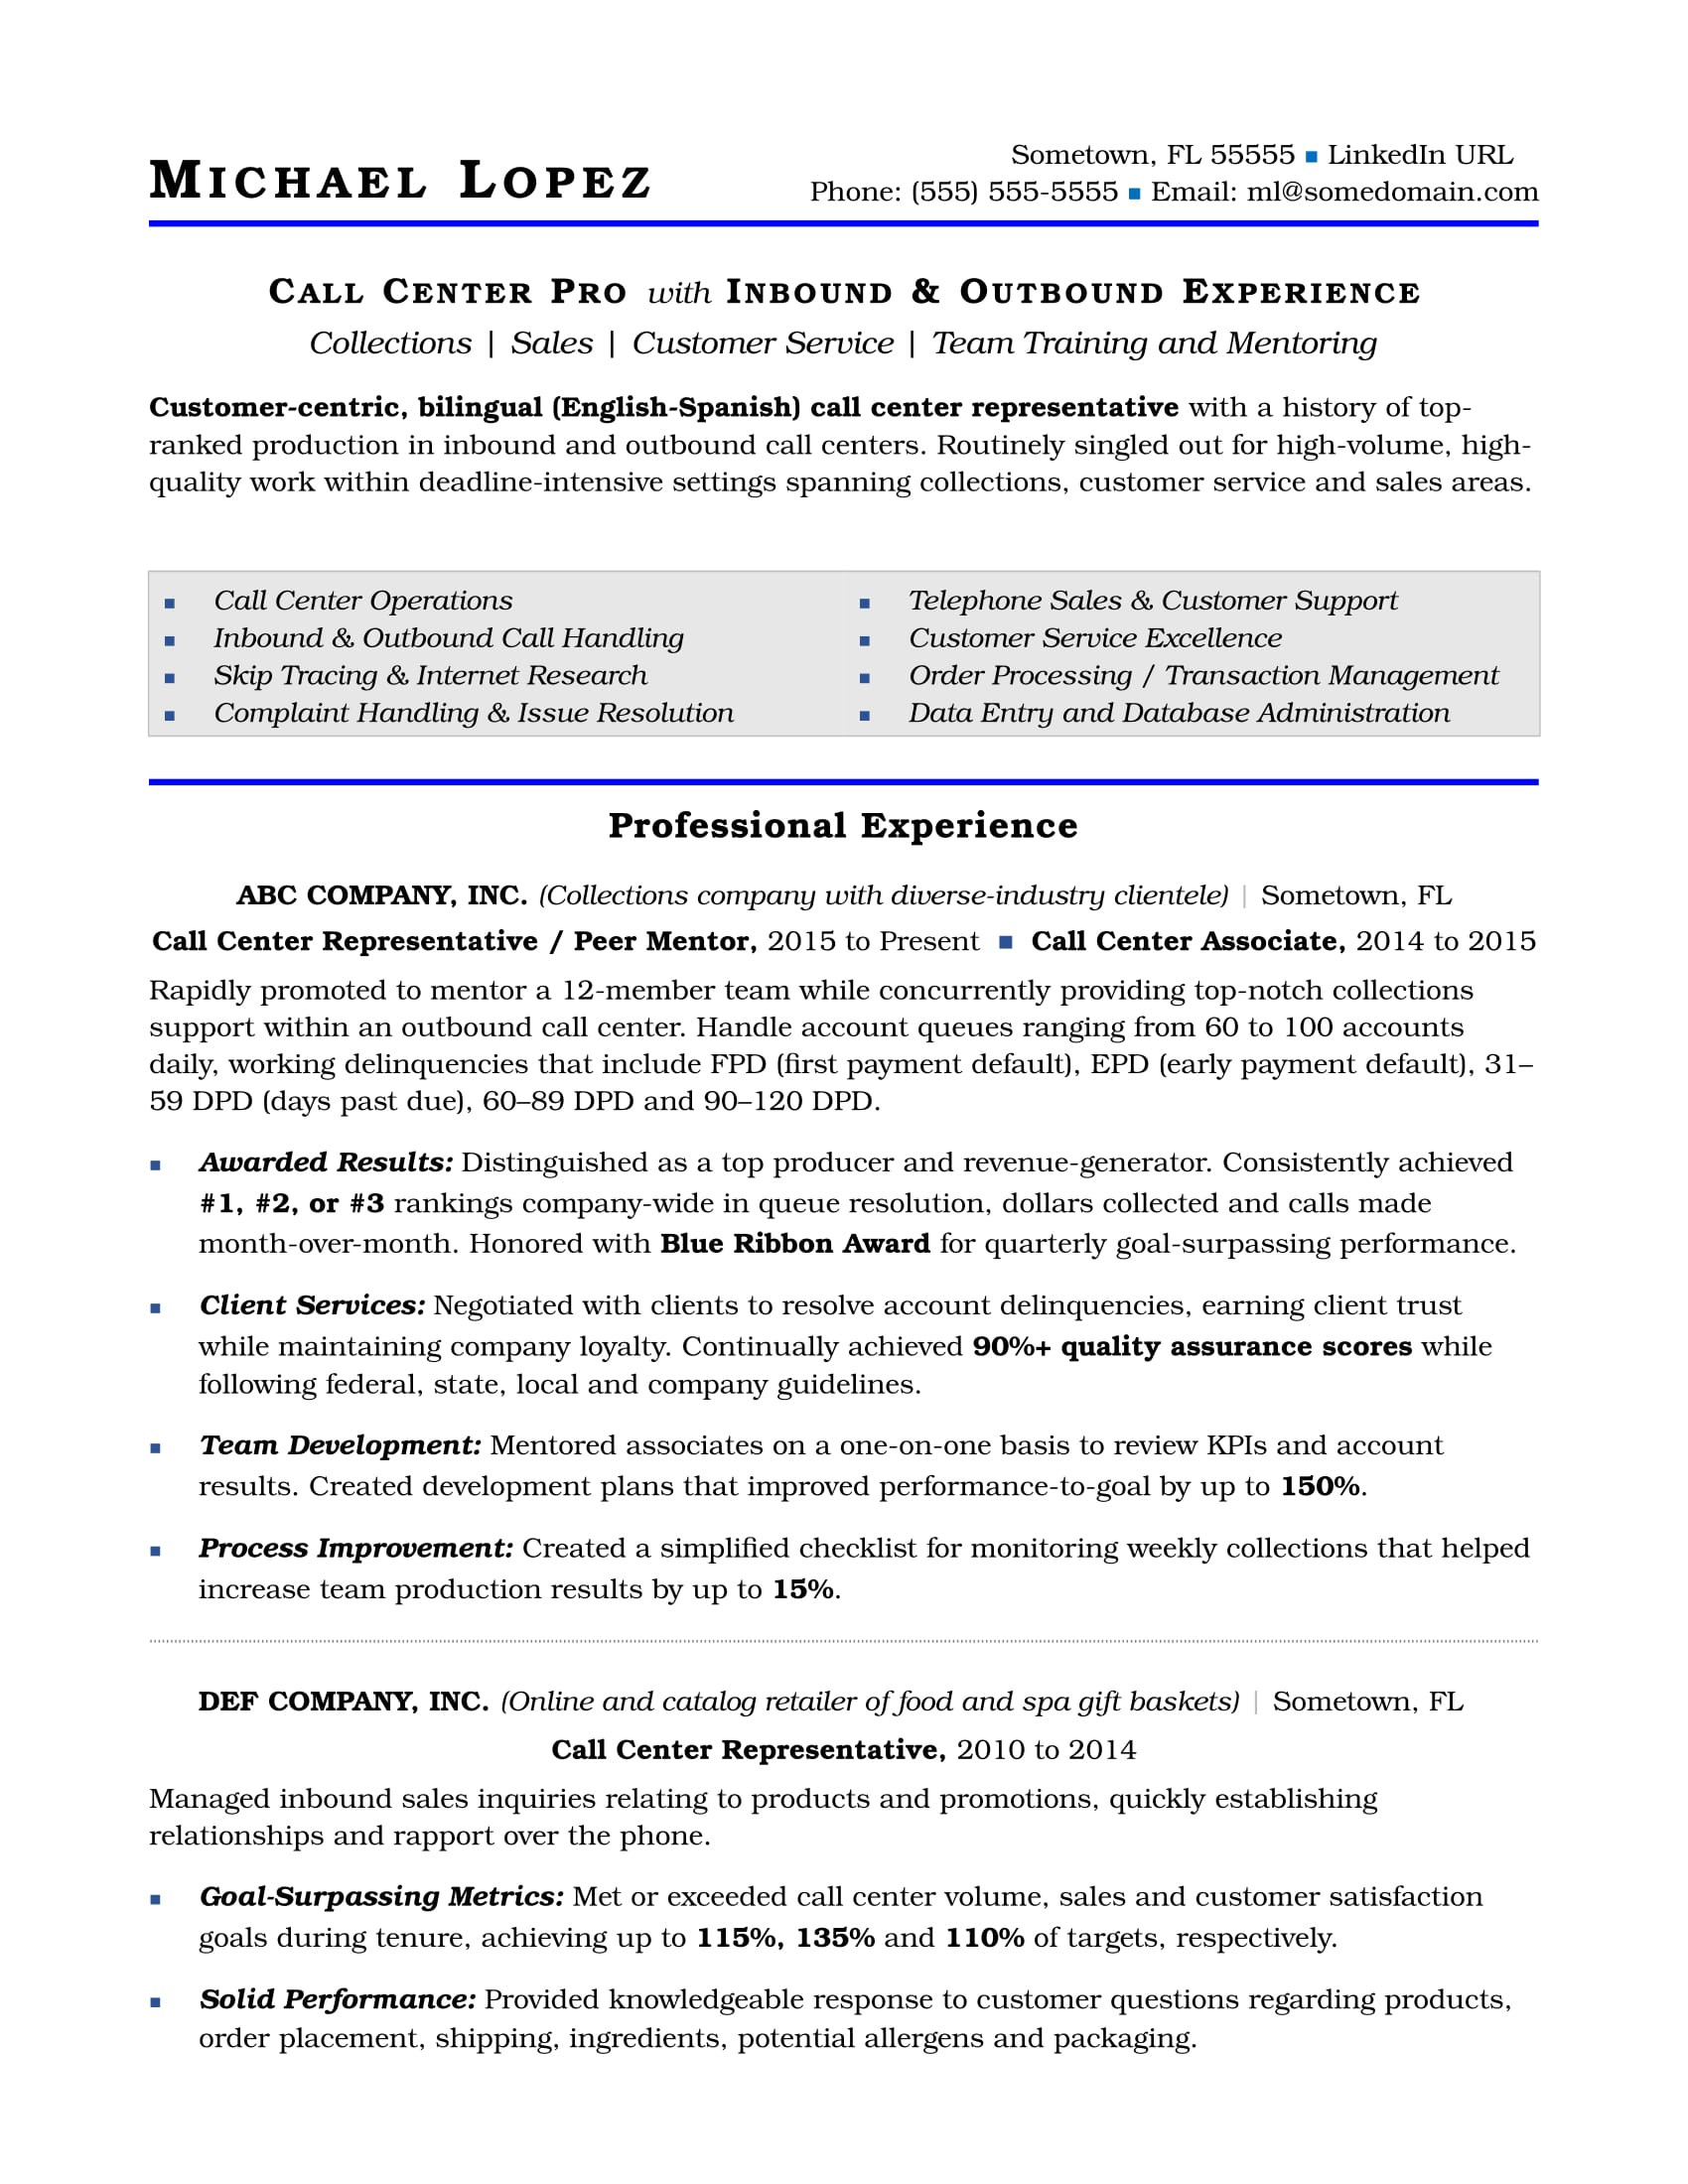 Sample Resume for Customer Relations Specialist Call Center Resume Sample Monster.com